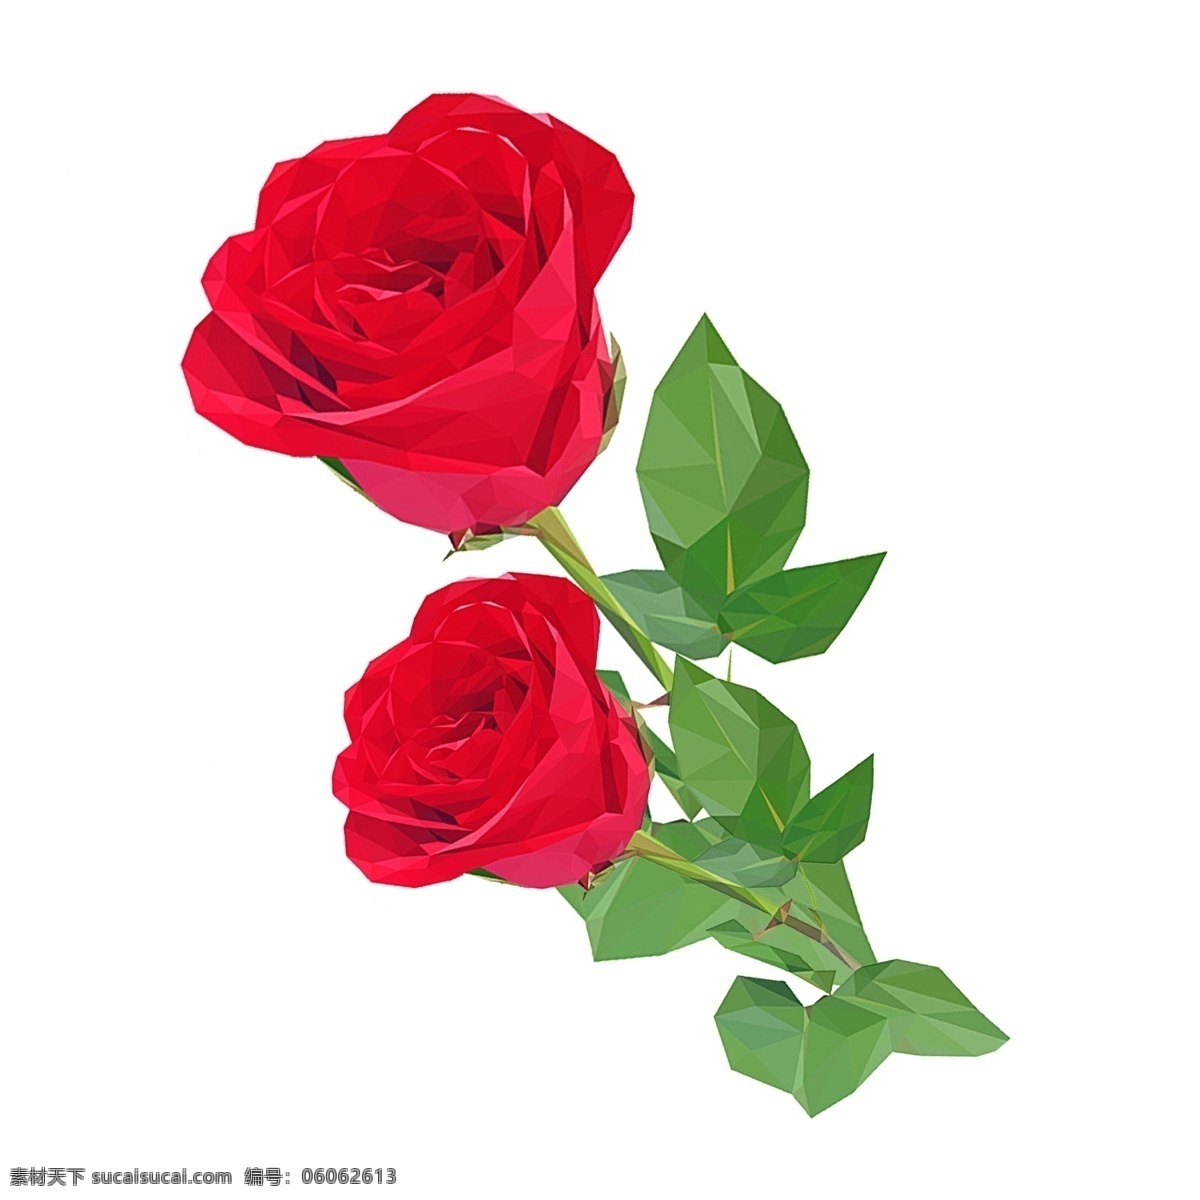 红色 玫瑰 花卉 植物 卡通素材 花朵 透明素材 玫瑰花卉 免 扣